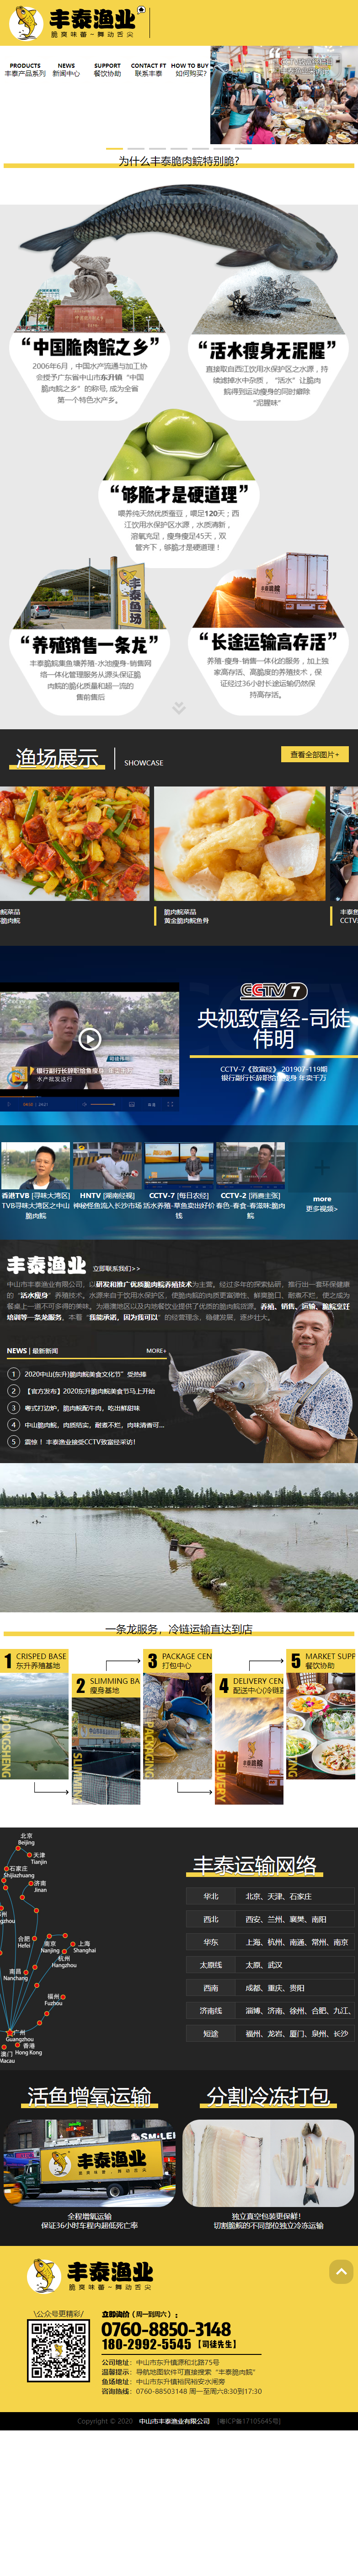 中山市丰泰渔业有限公司网站案例